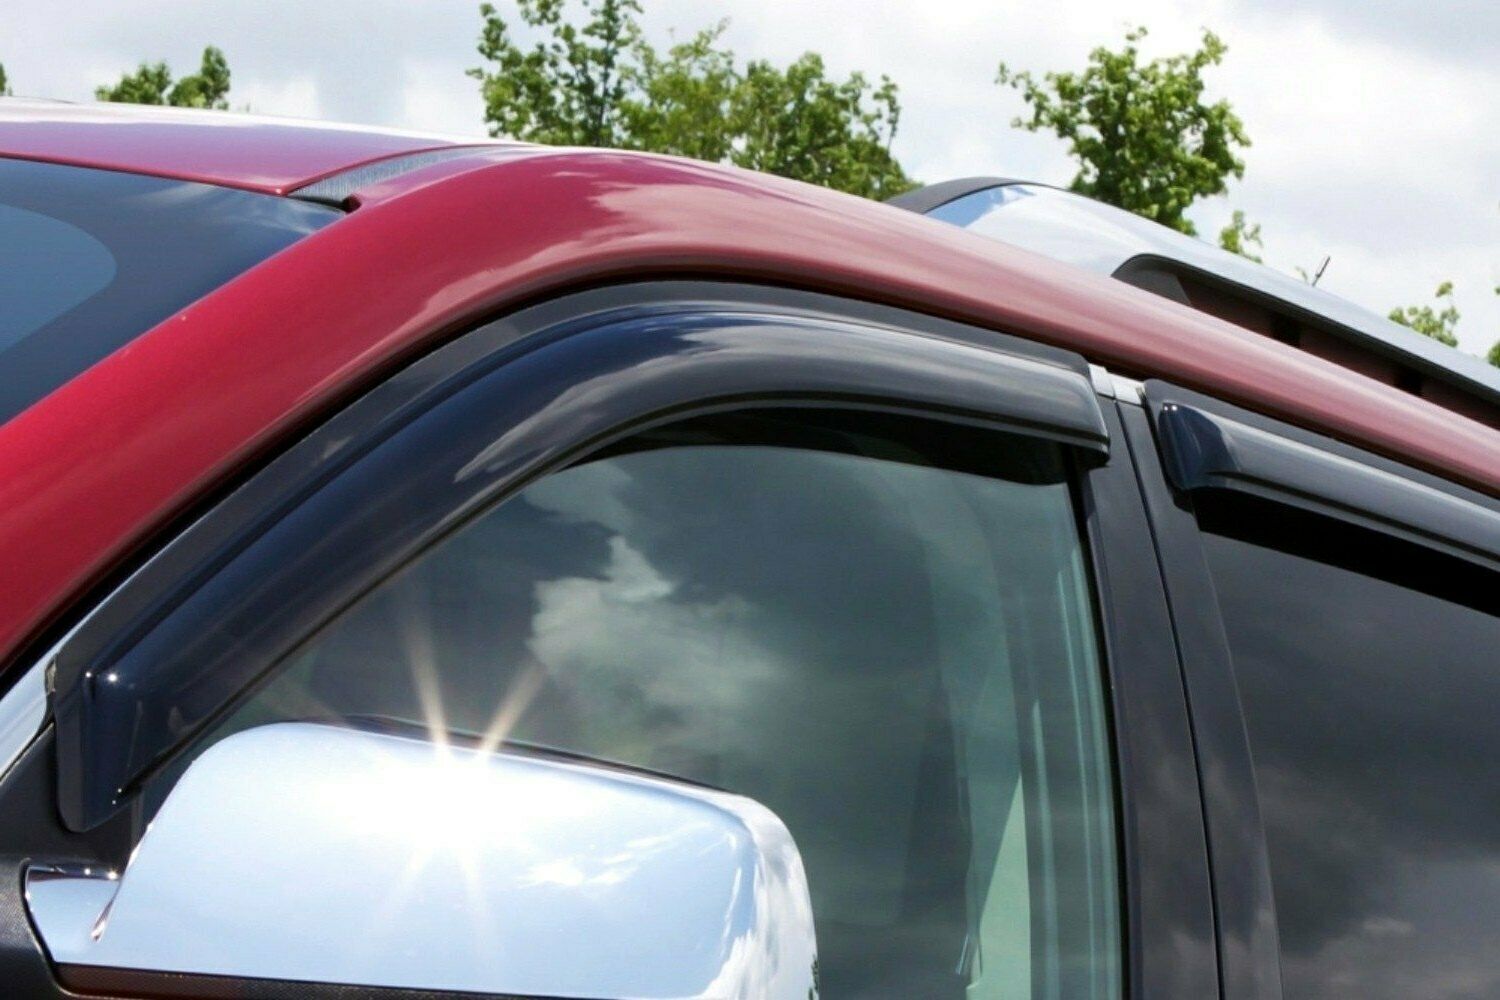 AVS Rain Guards Tape On Window Vent Visor 4 Piece For 2019 Ford Ranger - 94387